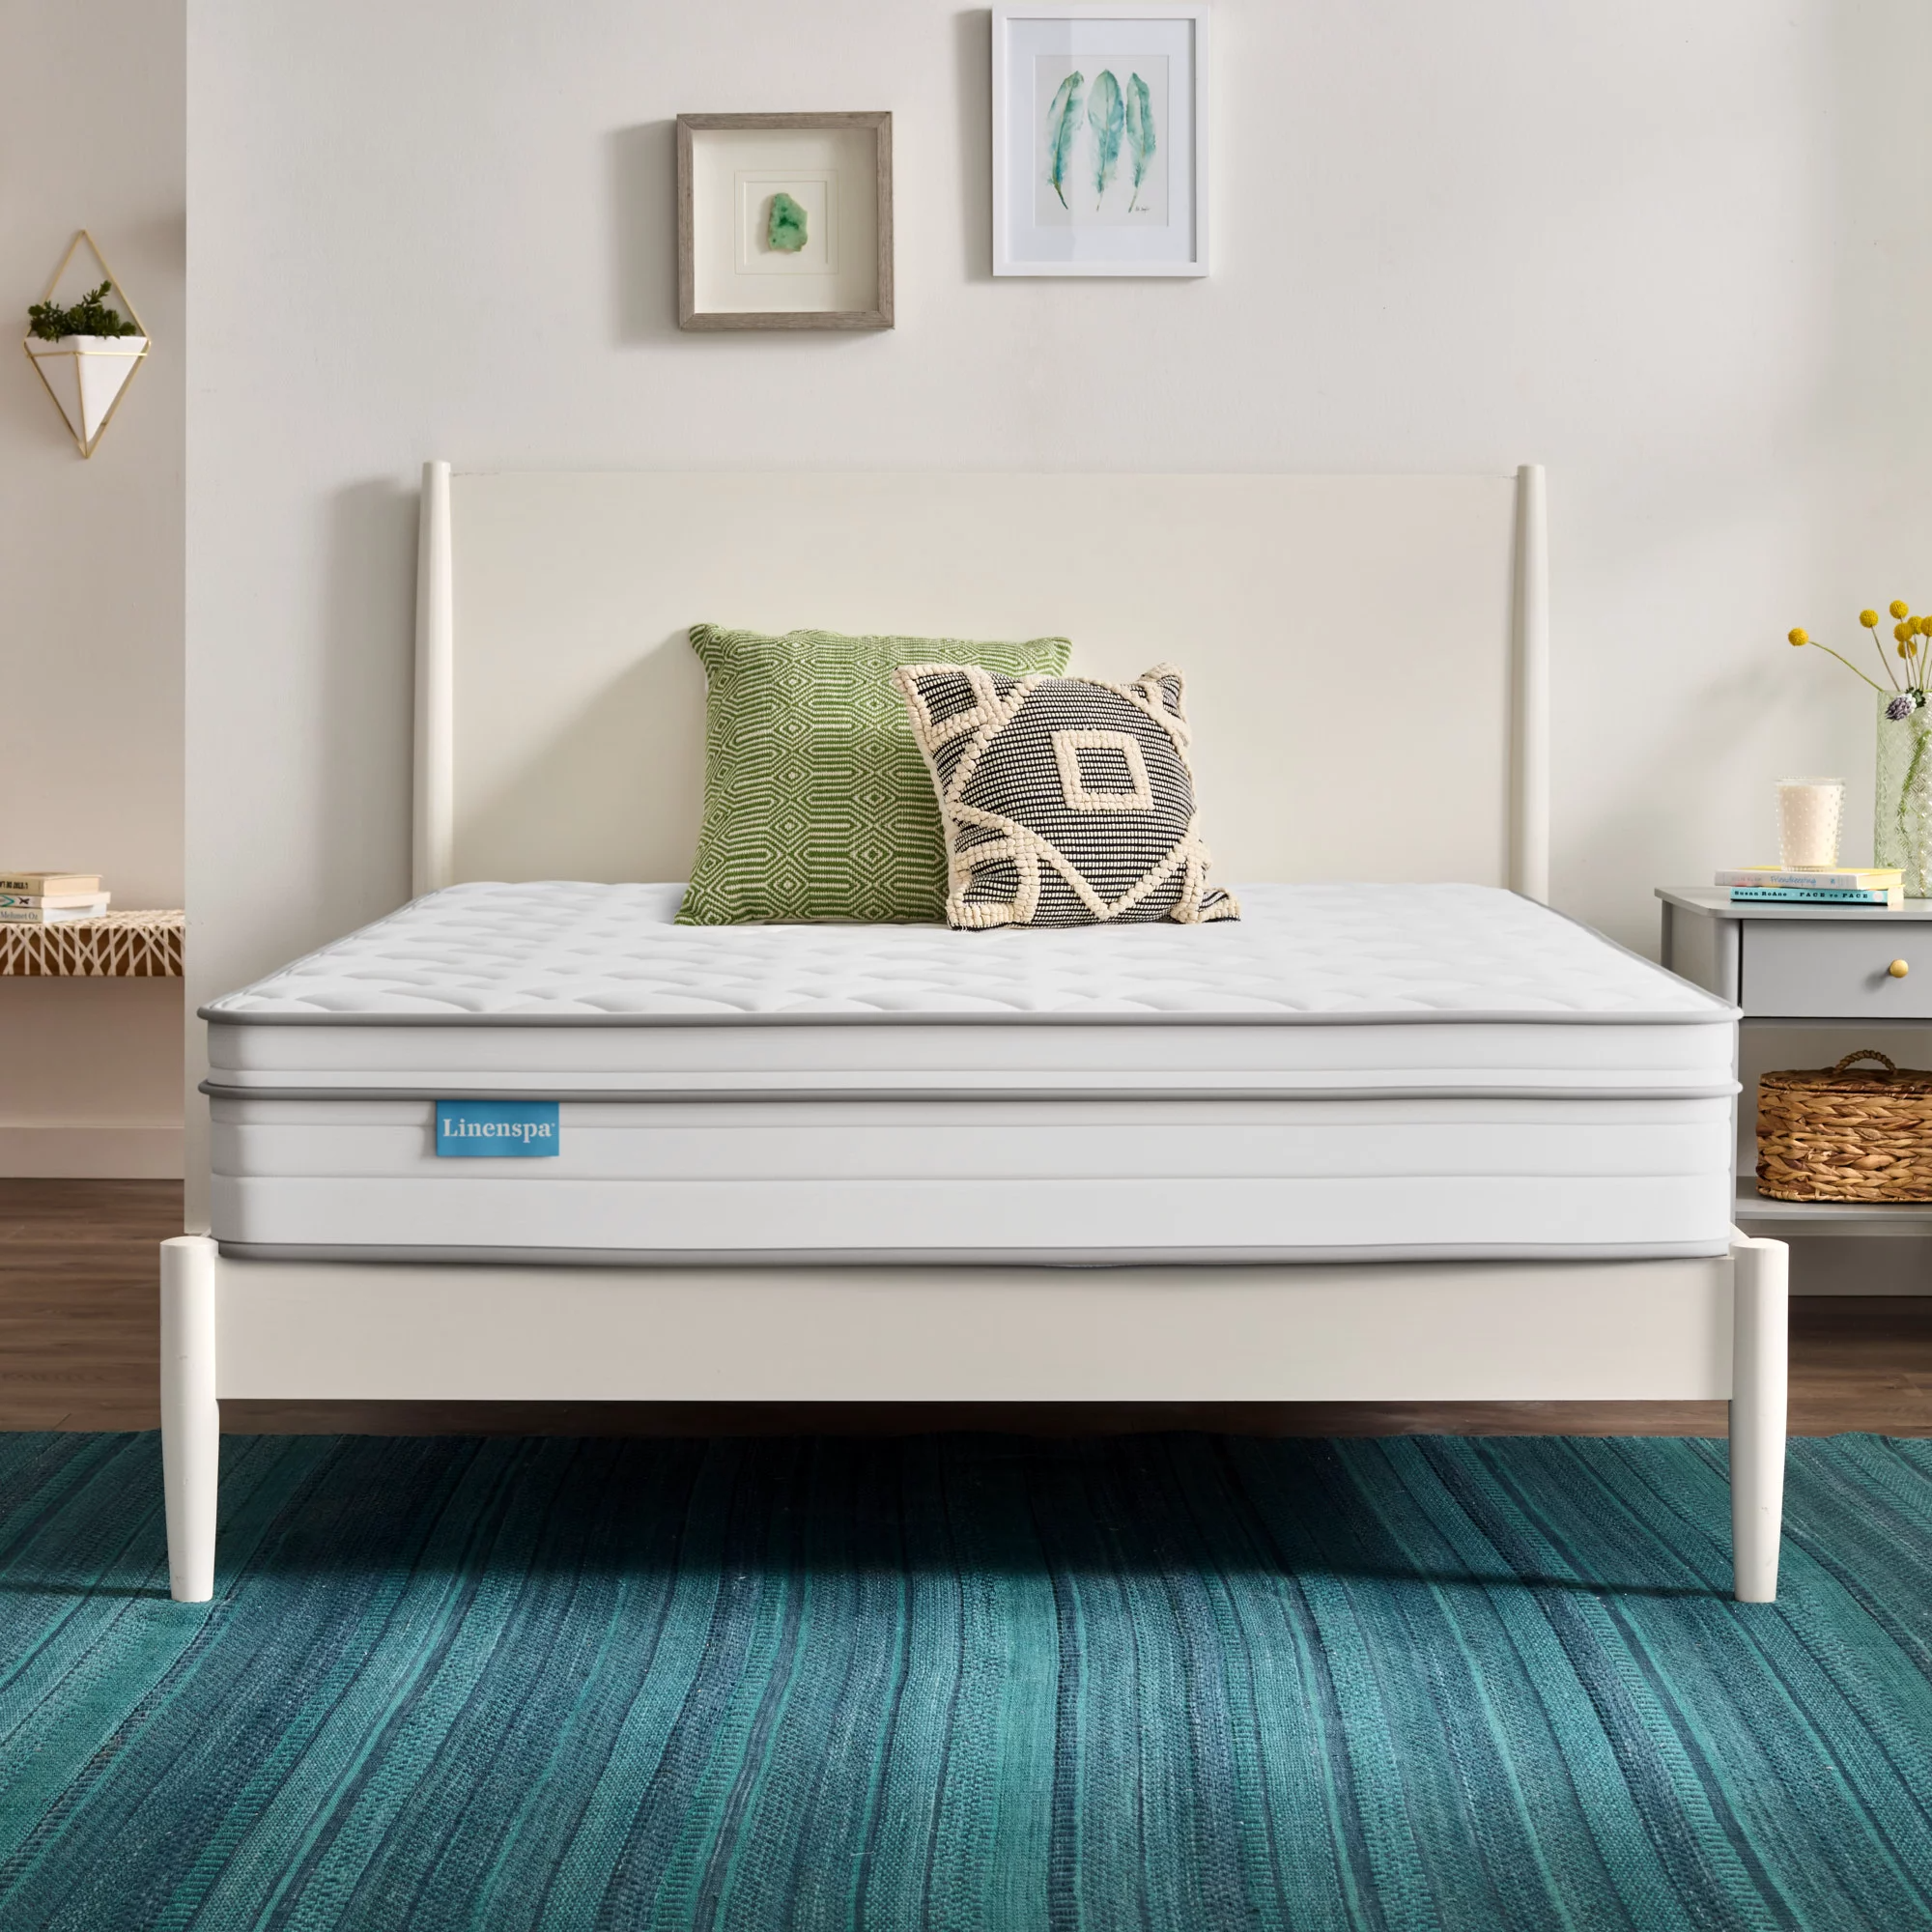 linenspa walmart mattress, best full size mattress for kids